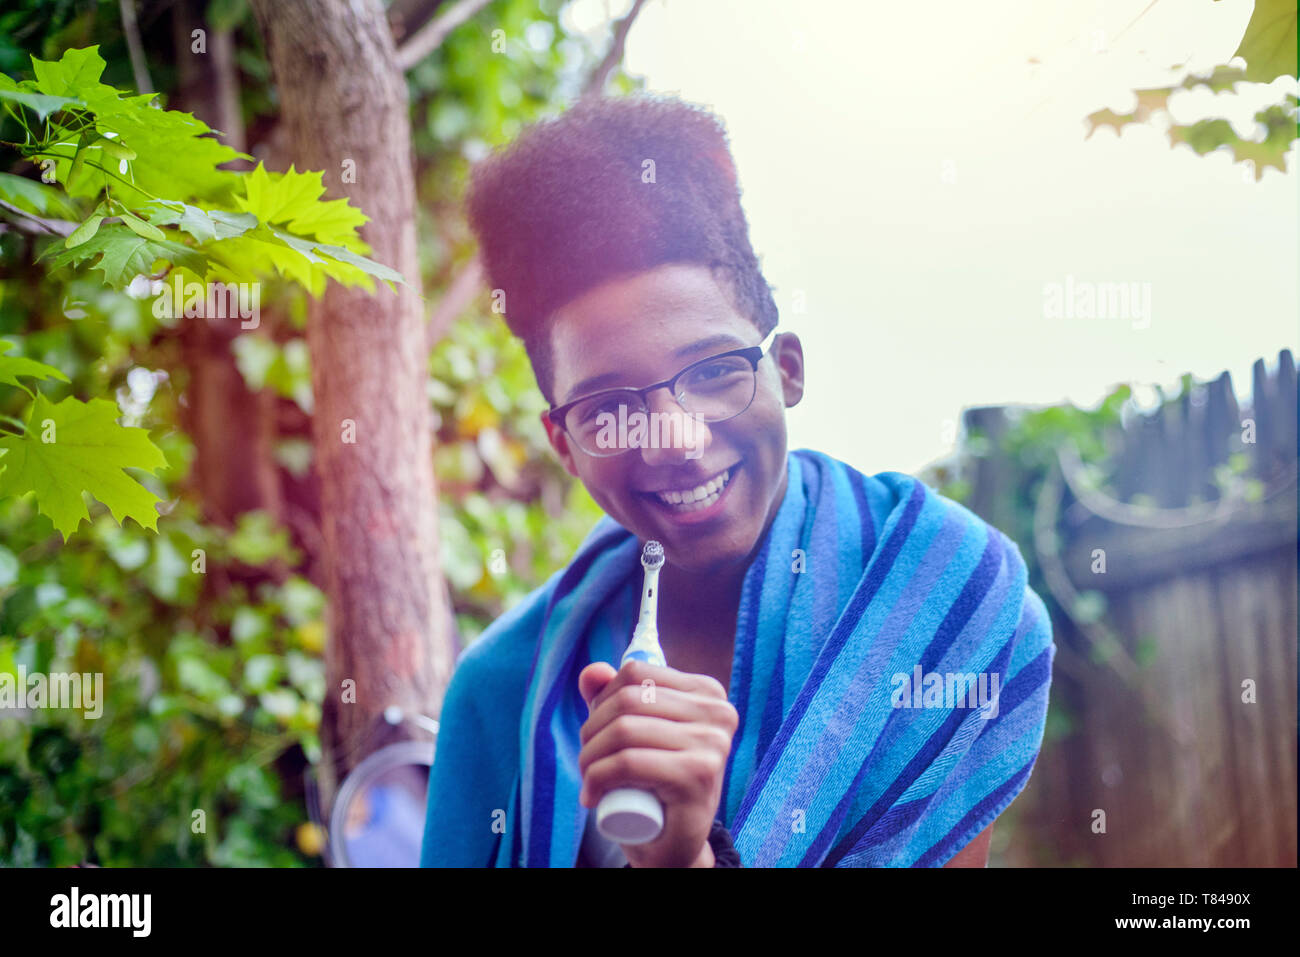 Adolescente con parte superior plana afro PEINADO MANTENIENDO cepillo eléctrico en el jardín, Retrato Foto de stock